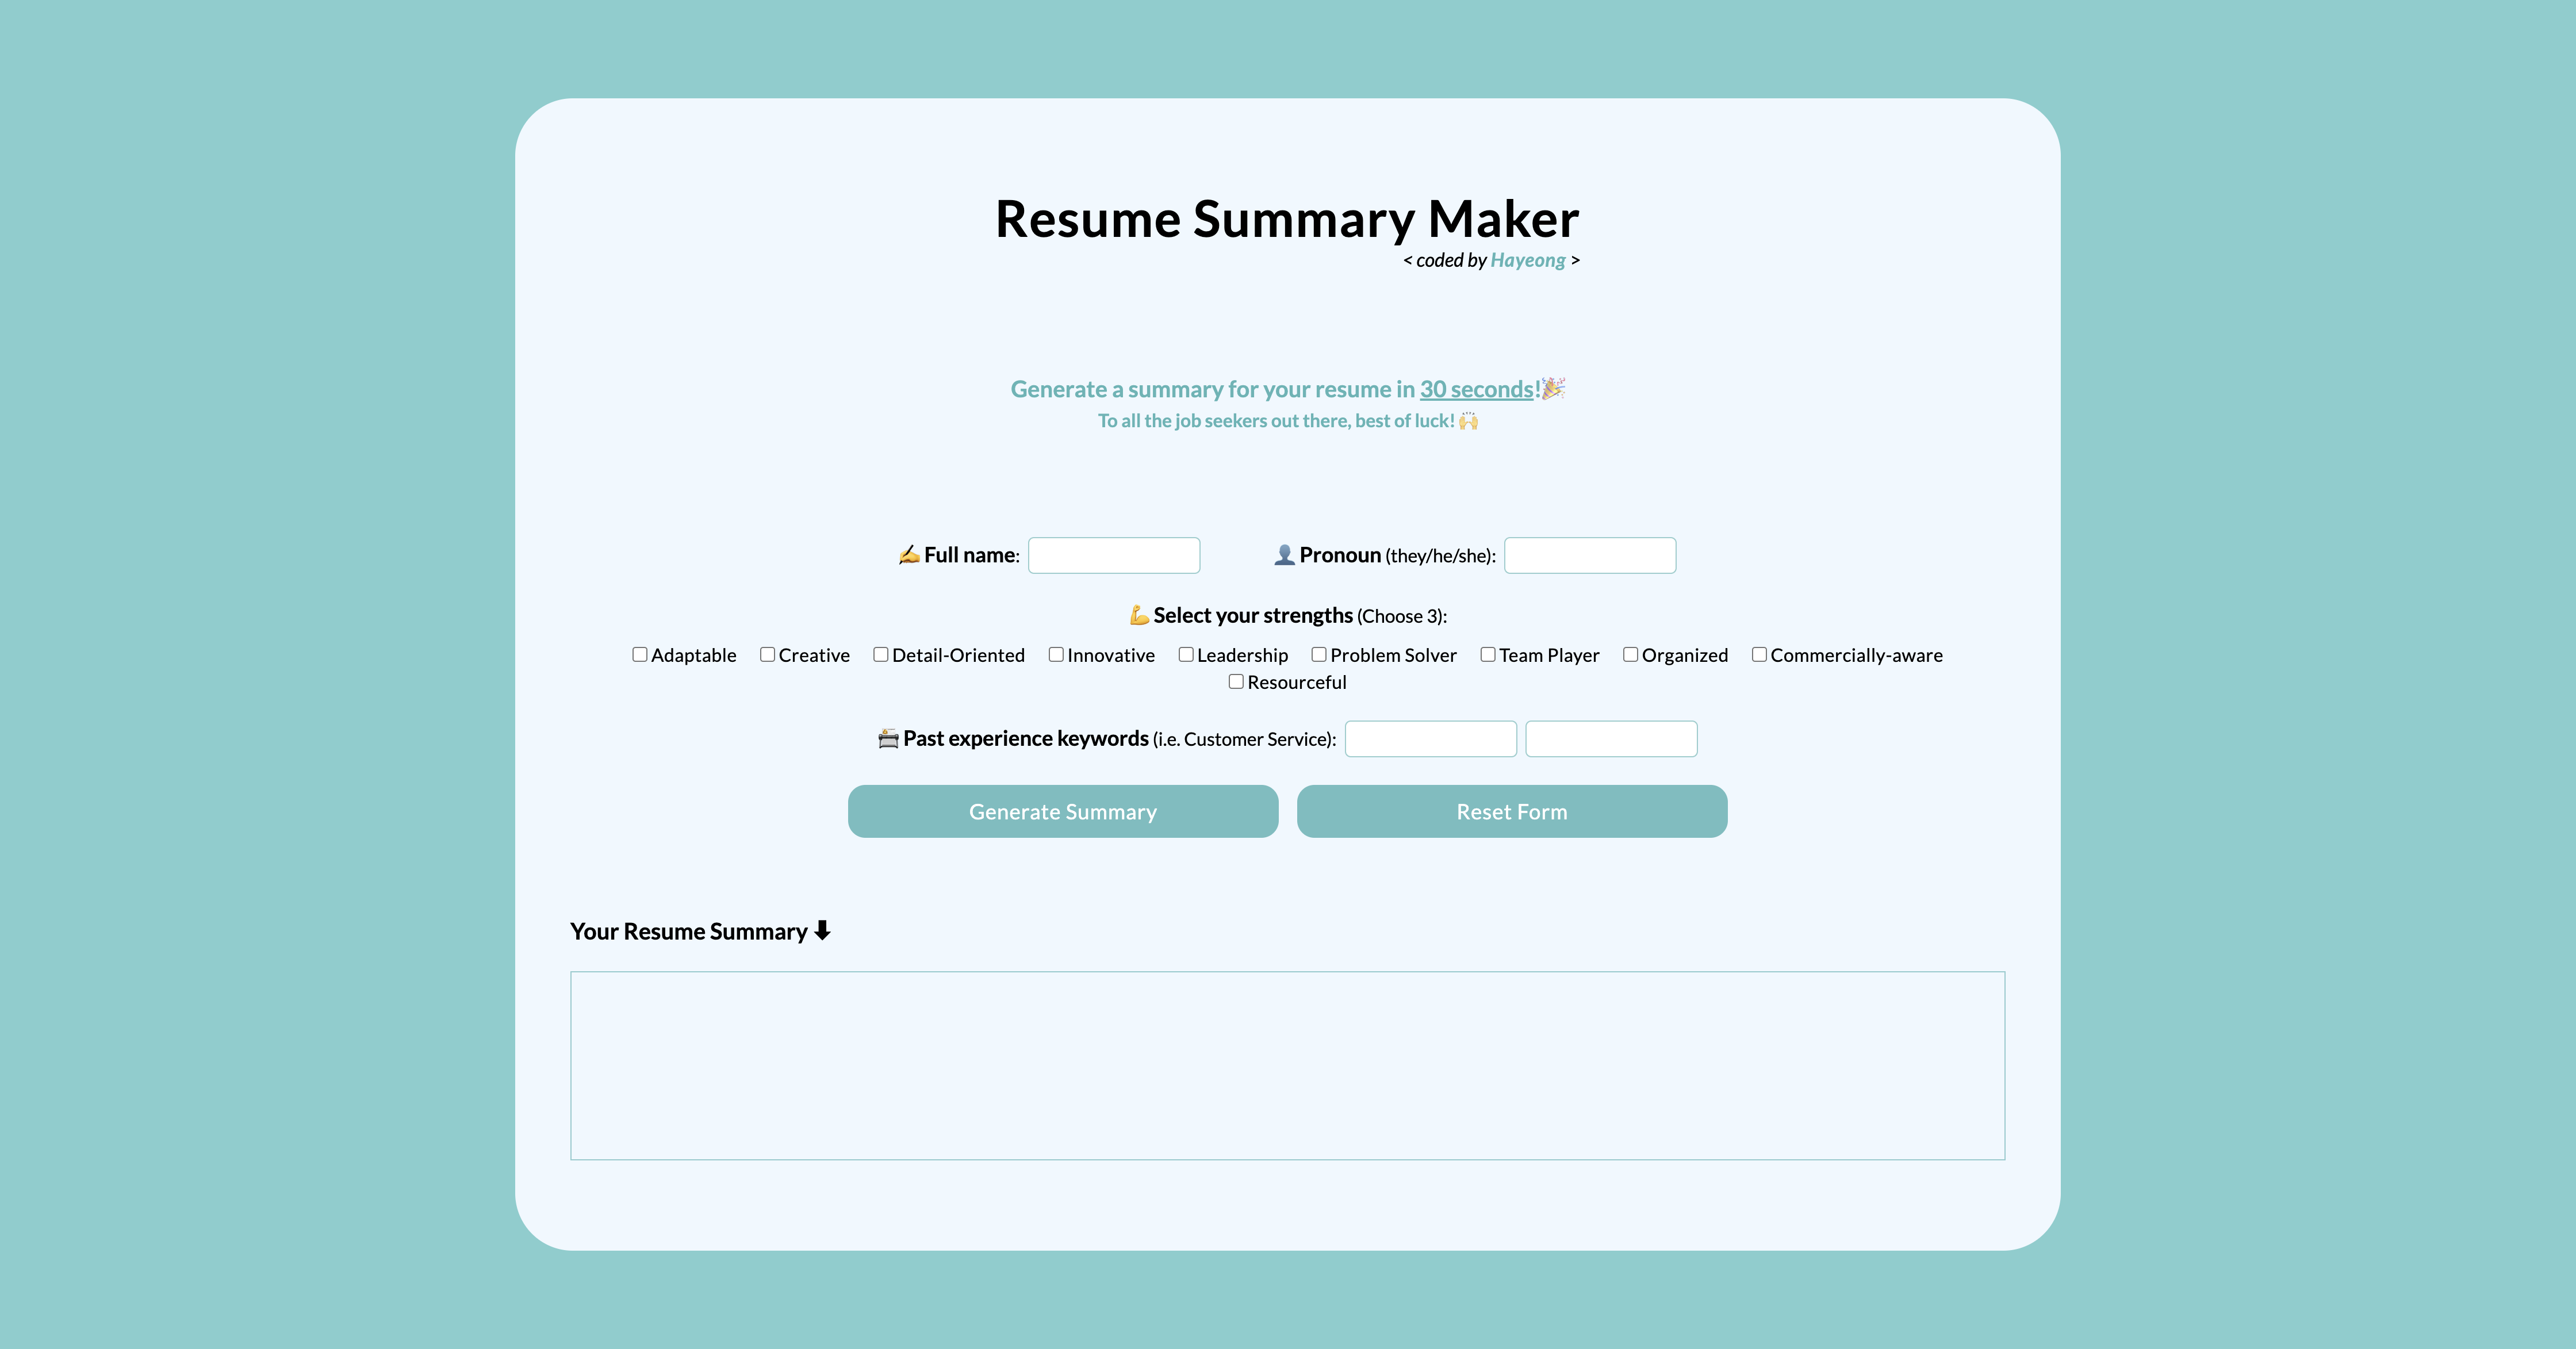 Resume Summary Maker